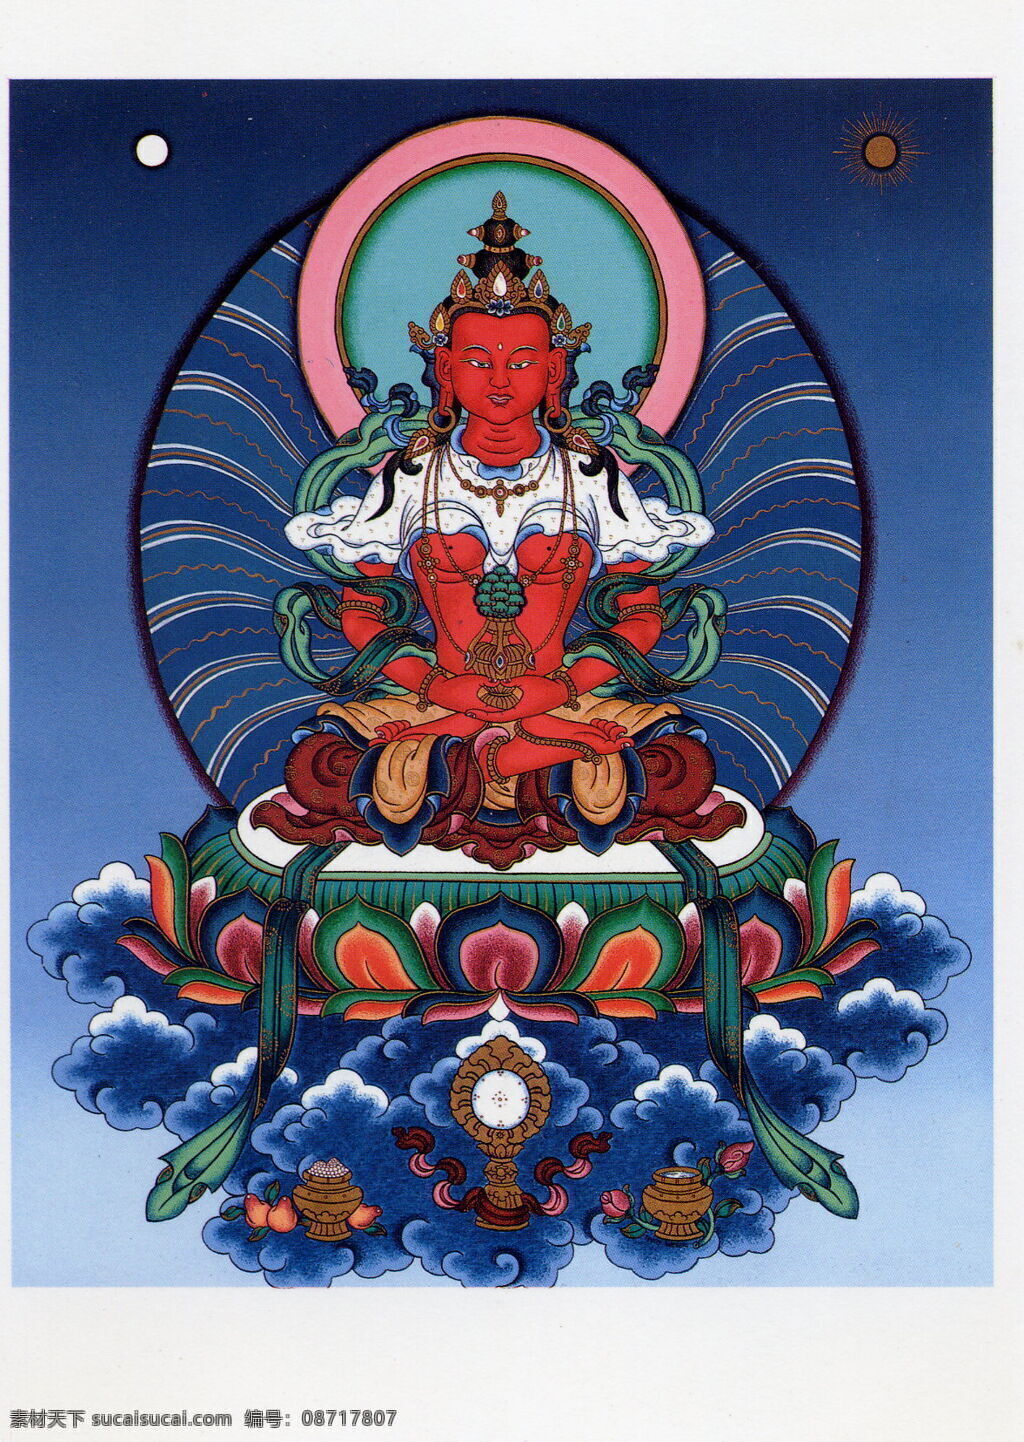 无量寿佛 设计素材 无量 寿 佛 模板下载 佛教 藏传 唐卡 宗教 艺术 宗教信仰 文化艺术